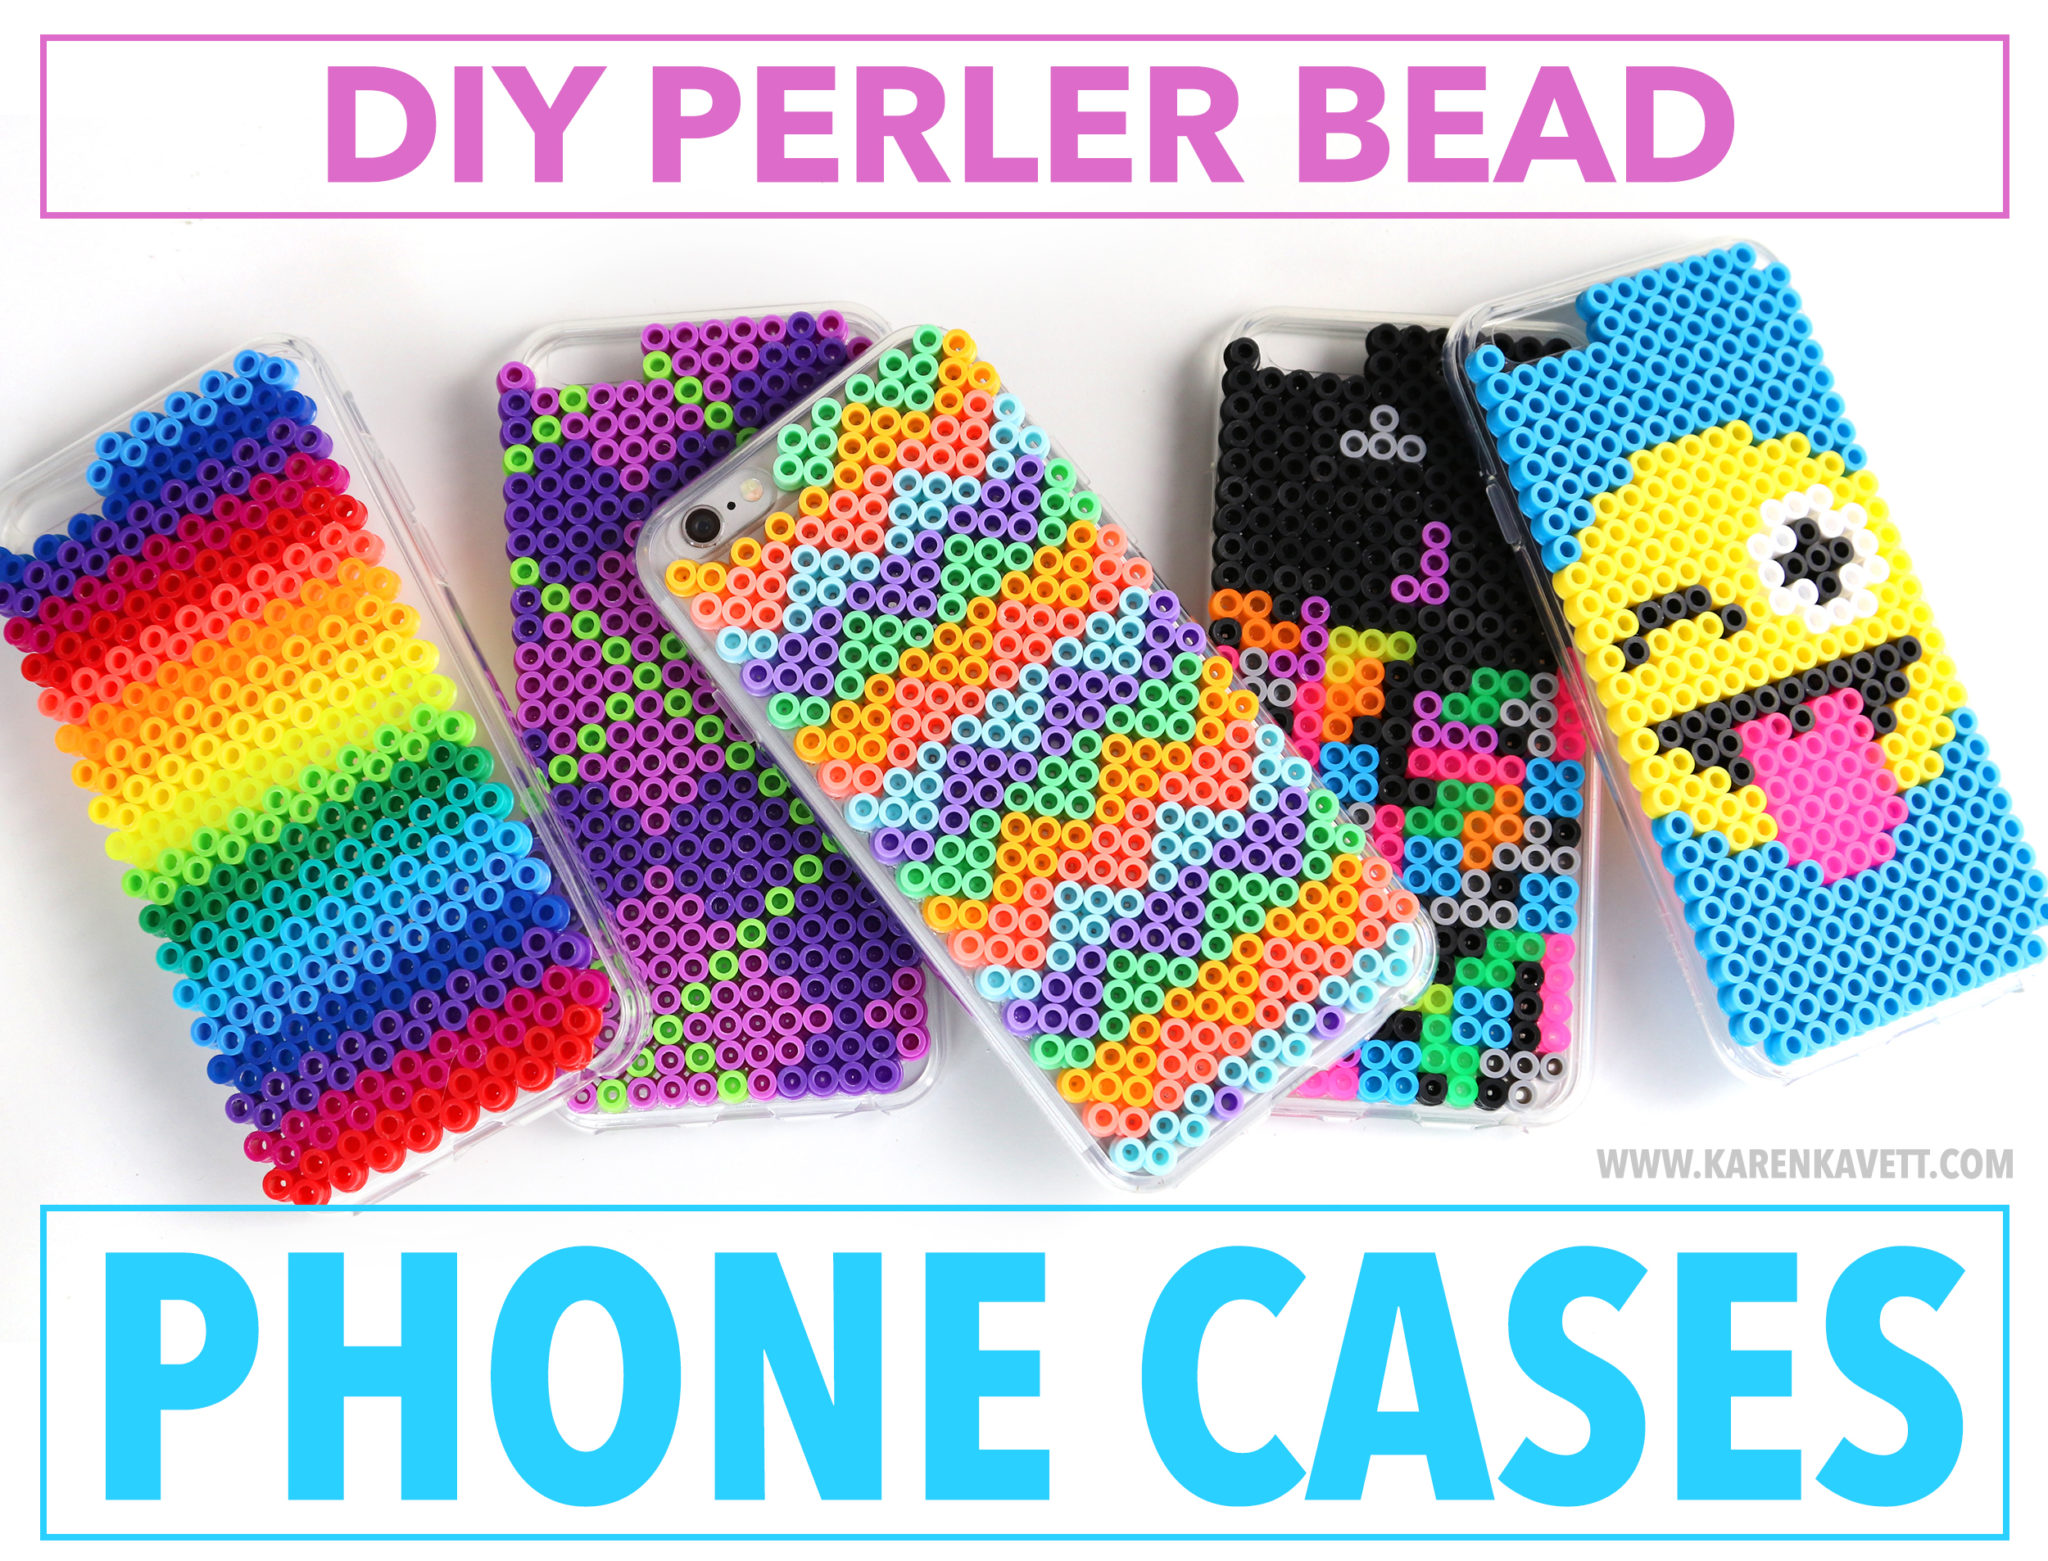 DIY Perler Bead Phone Cases - Karen Kavett